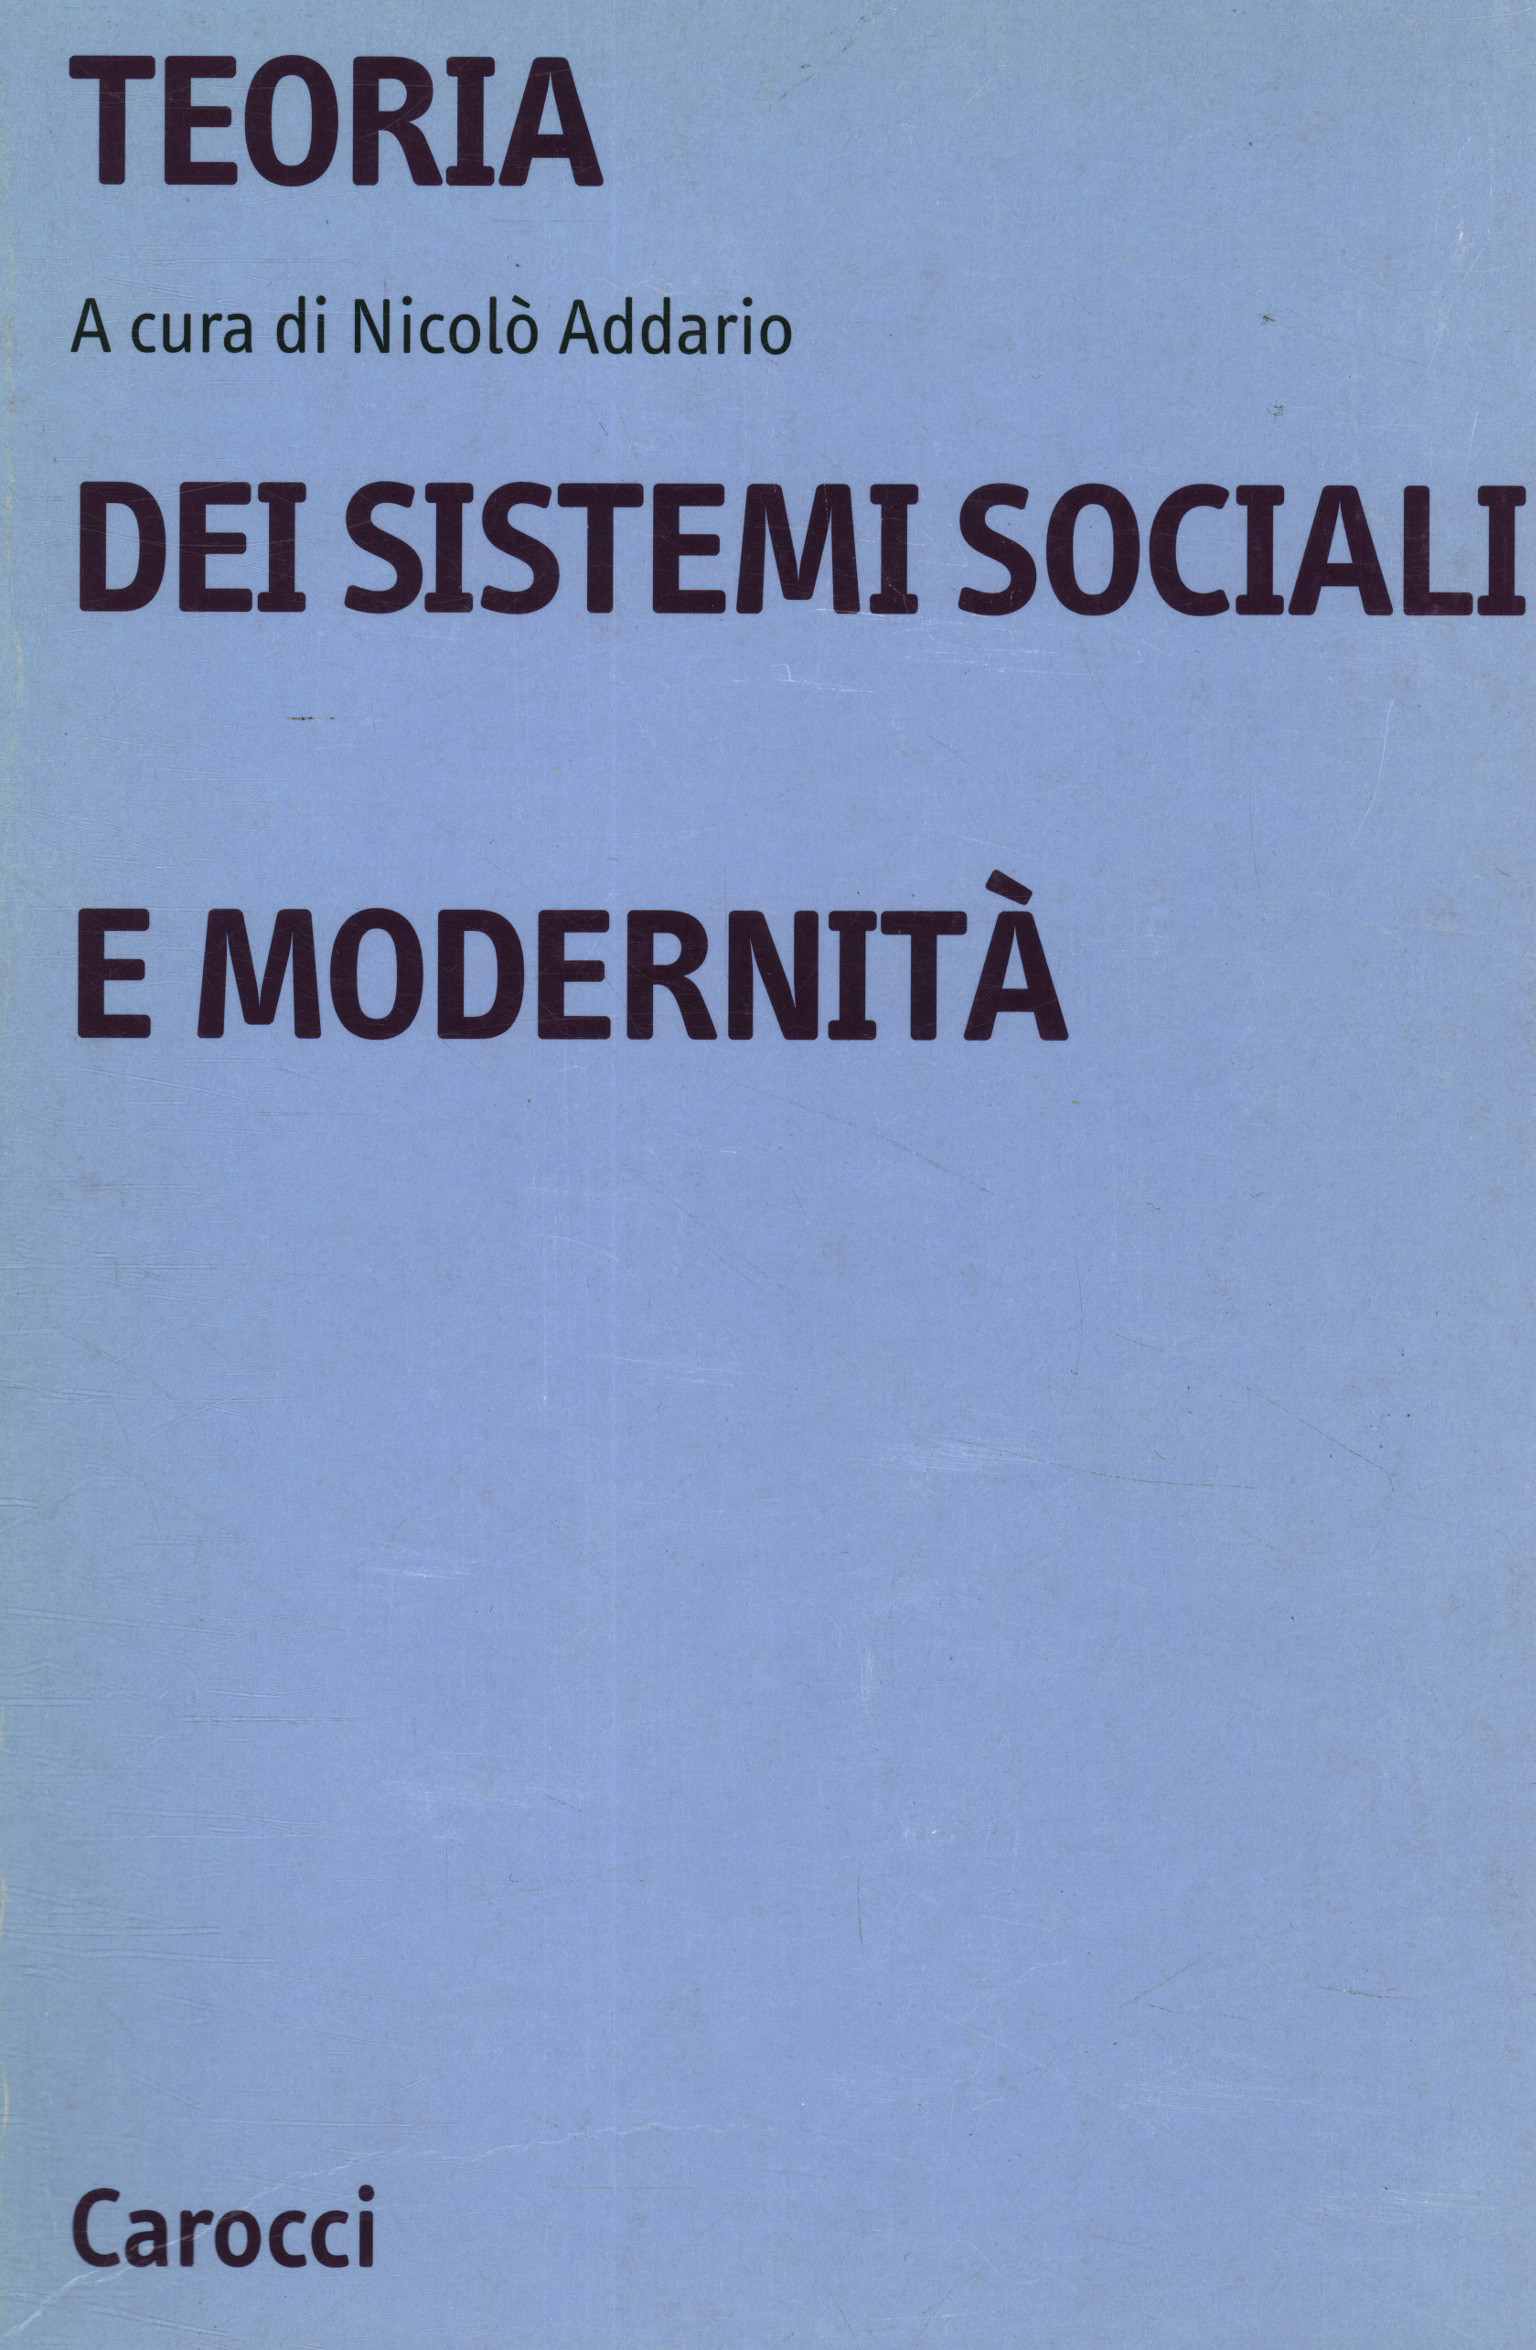 Théorie des systèmes sociaux et modernité, Théorie des systèmes sociaux et modernité, Théorie des systèmes sociaux et modernité